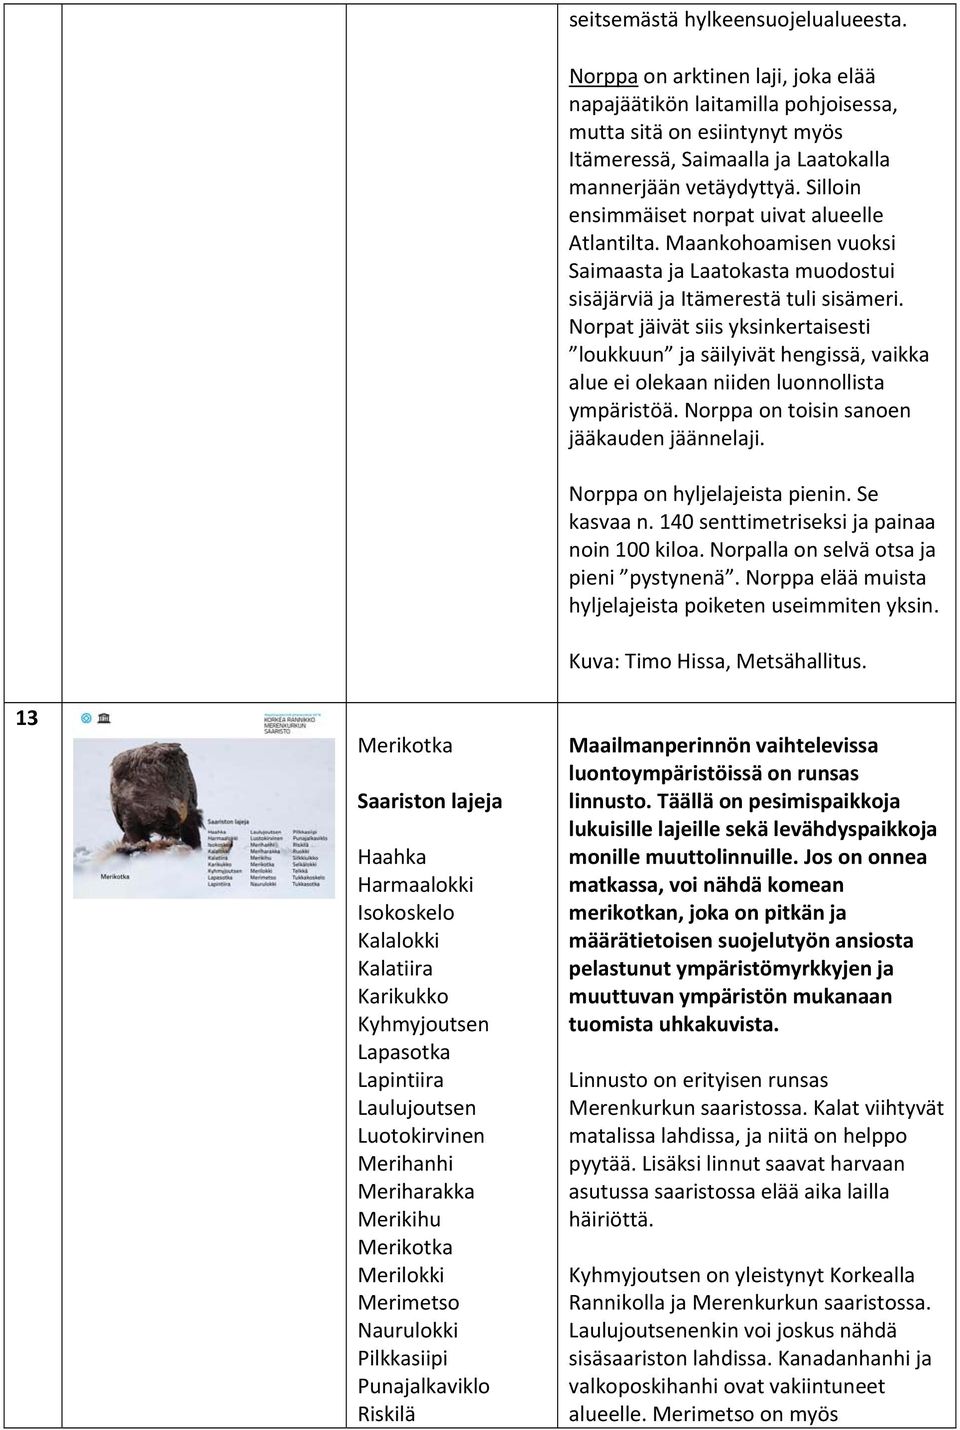 Norppa on arktinen laji, joka elää napajäätikön laitamilla pohjoisessa, mutta sitä on esiintynyt myös Itämeressä, Saimaalla ja Laatokalla mannerjään vetäydyttyä.